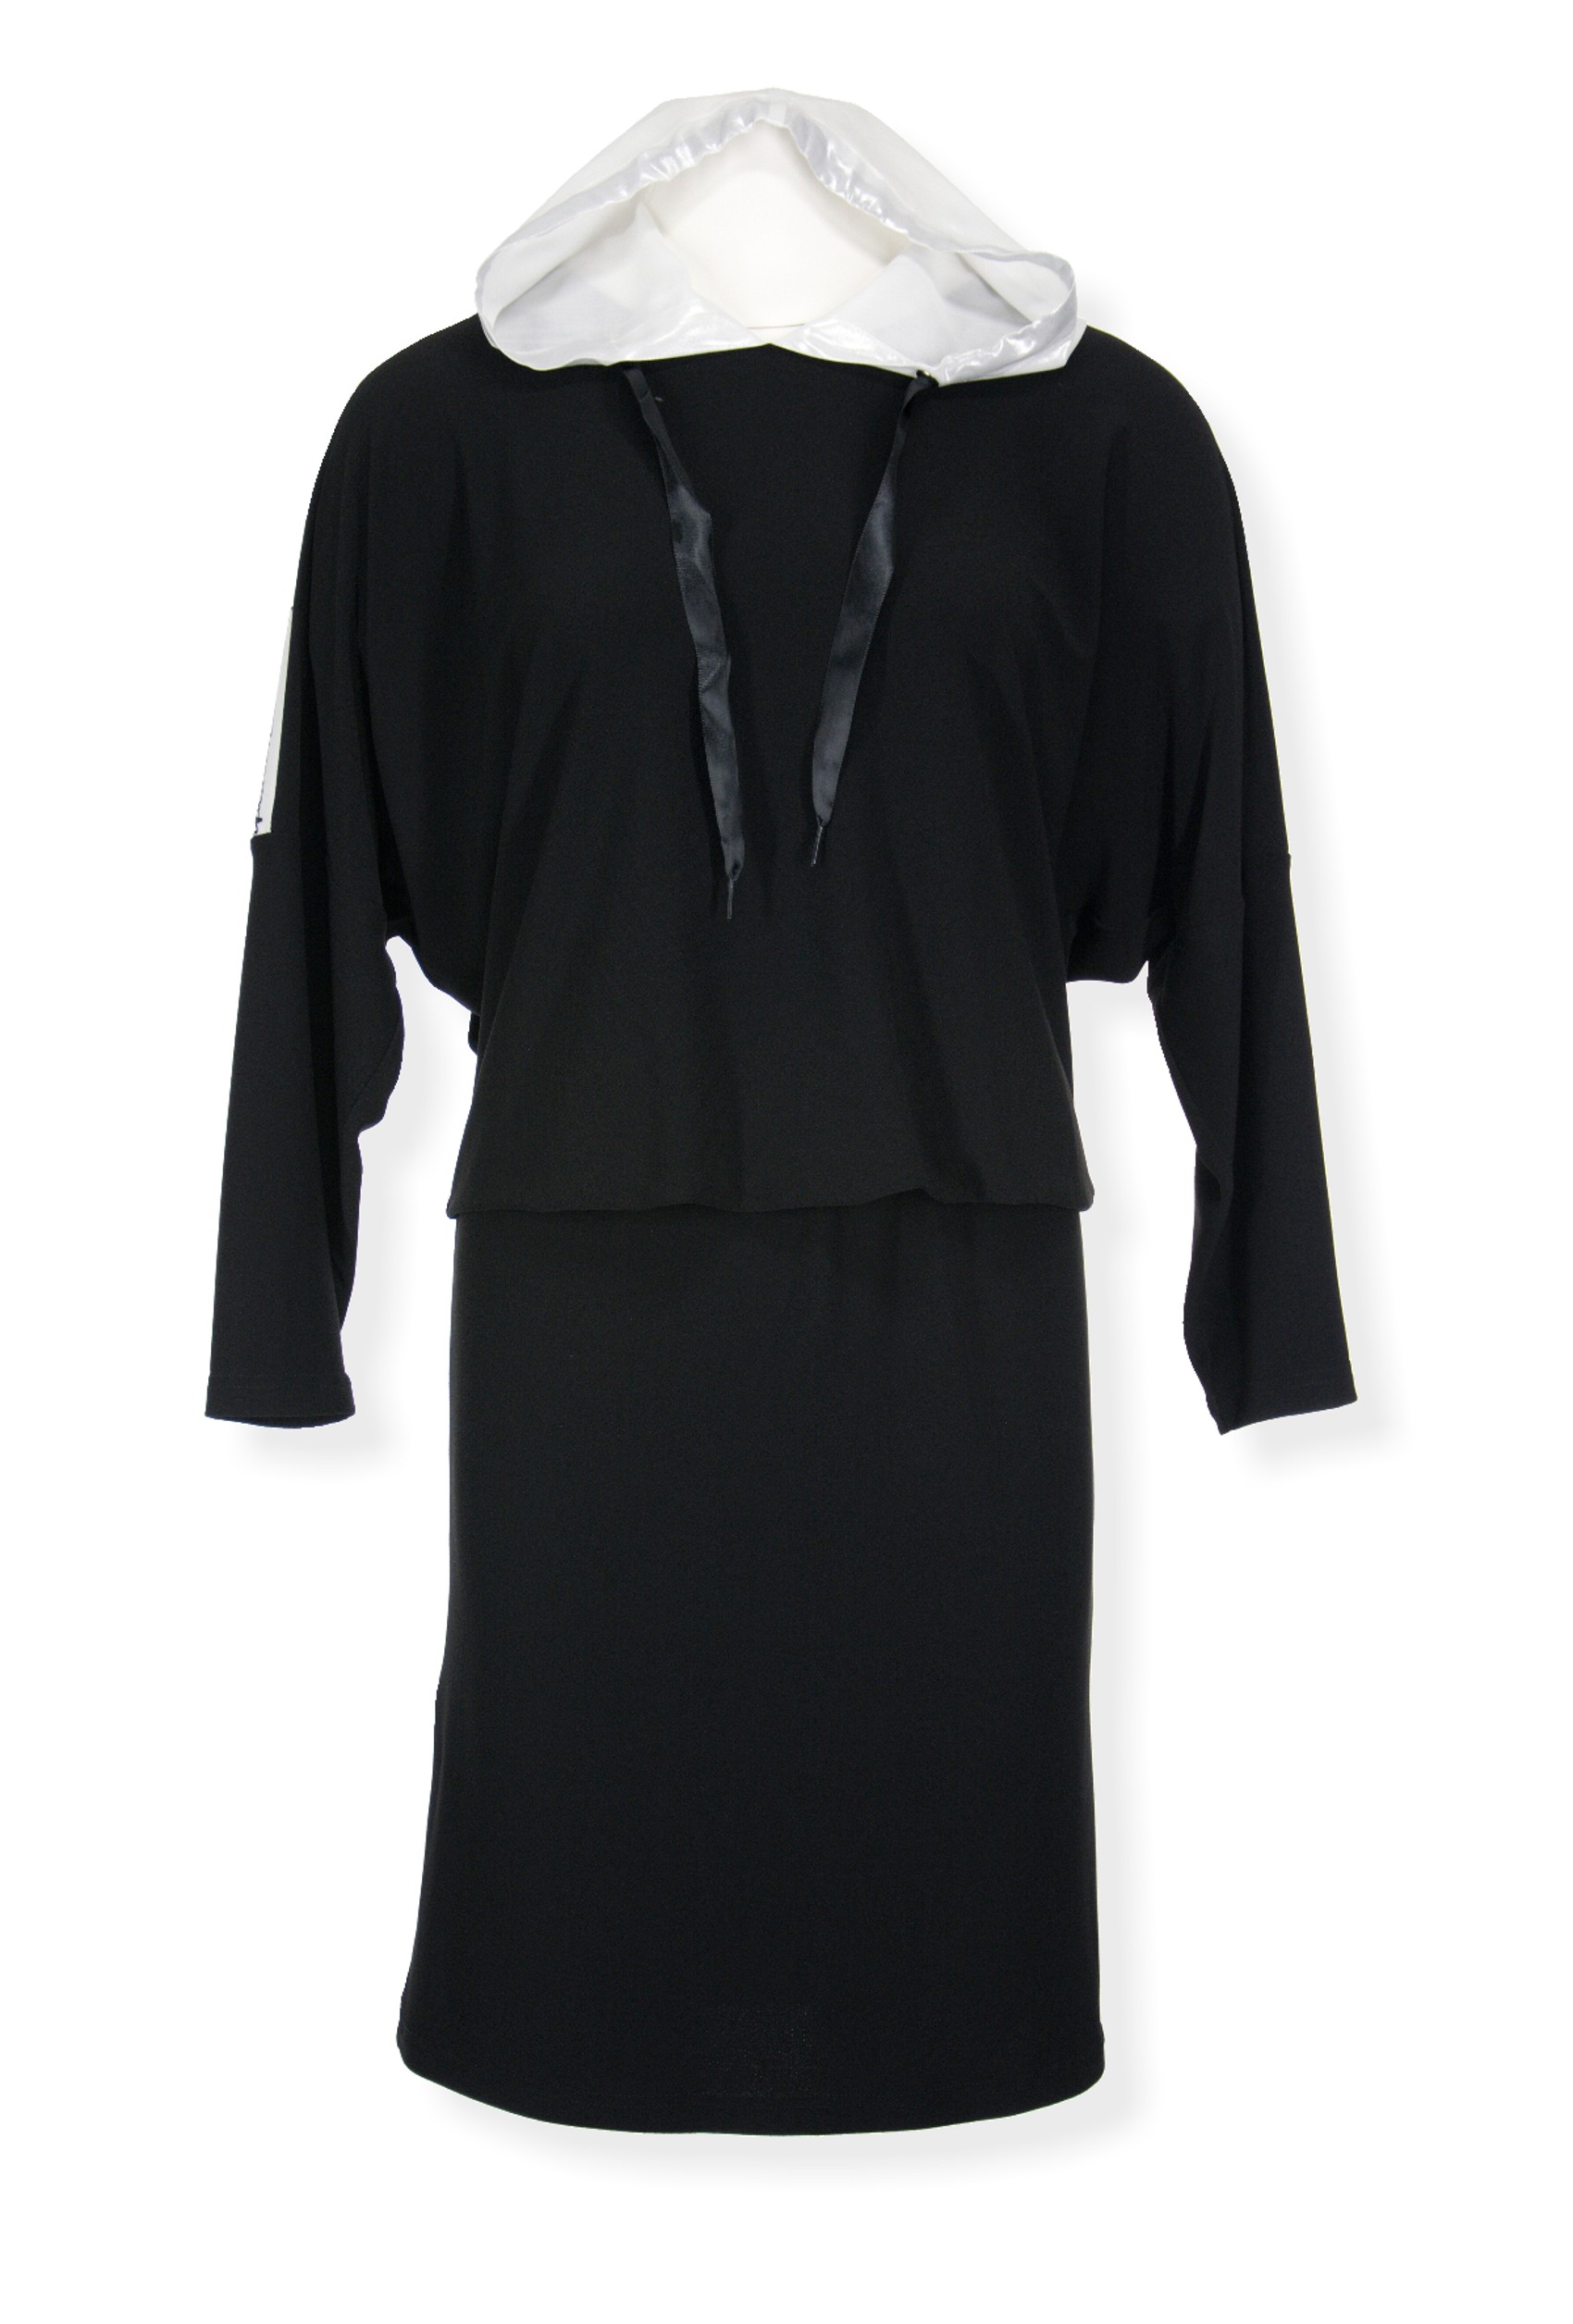 Šaty s dlouhým rukávem černé s kapucí